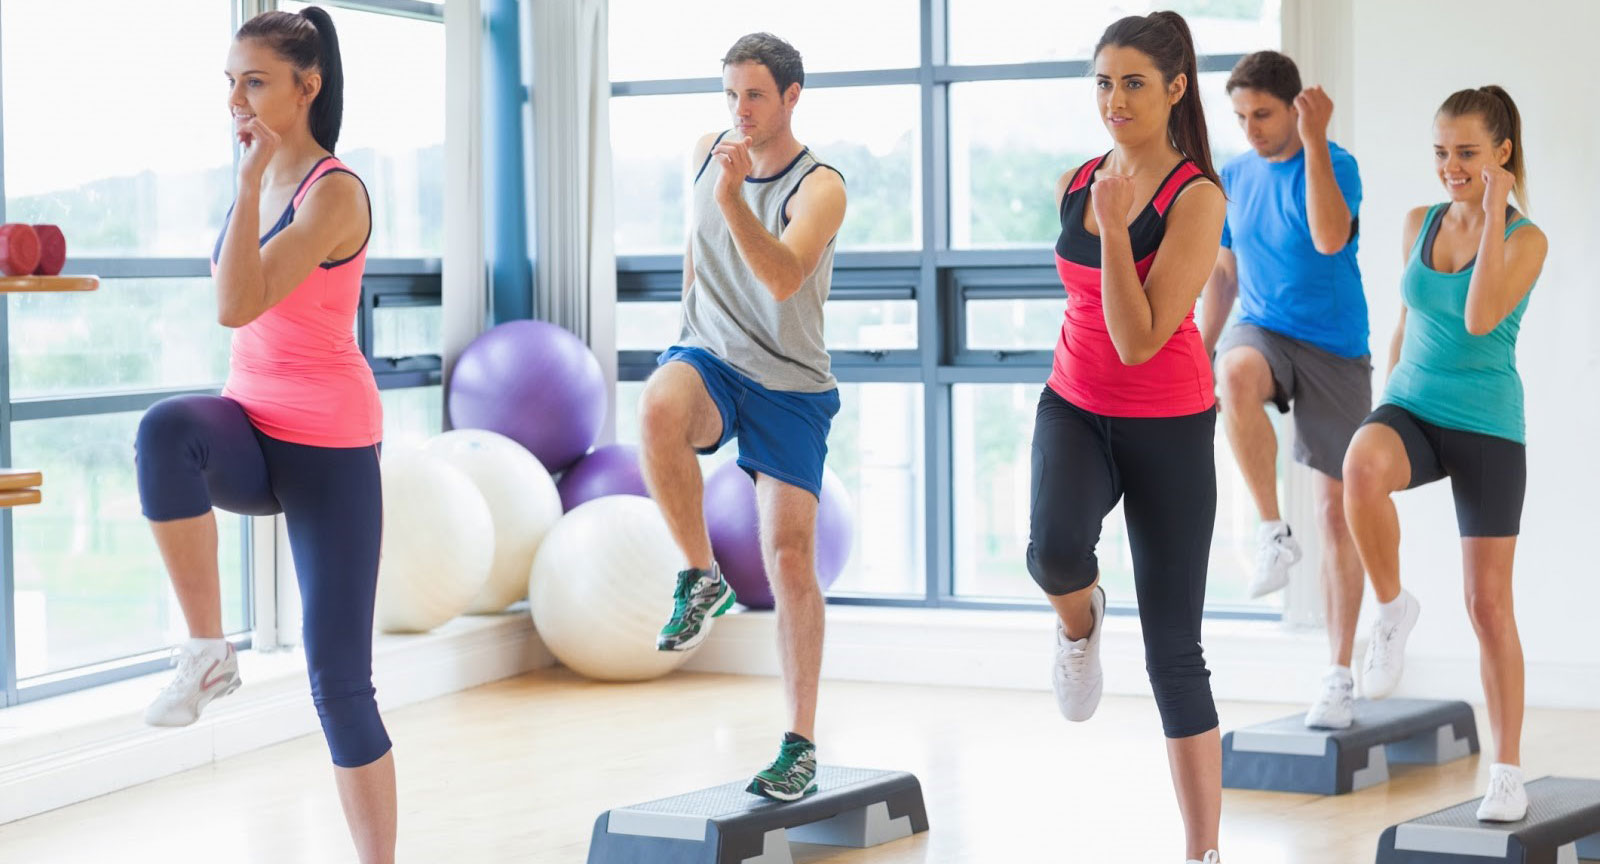 Tập aerobic có tác dụng giảm mỡ bụng không?
